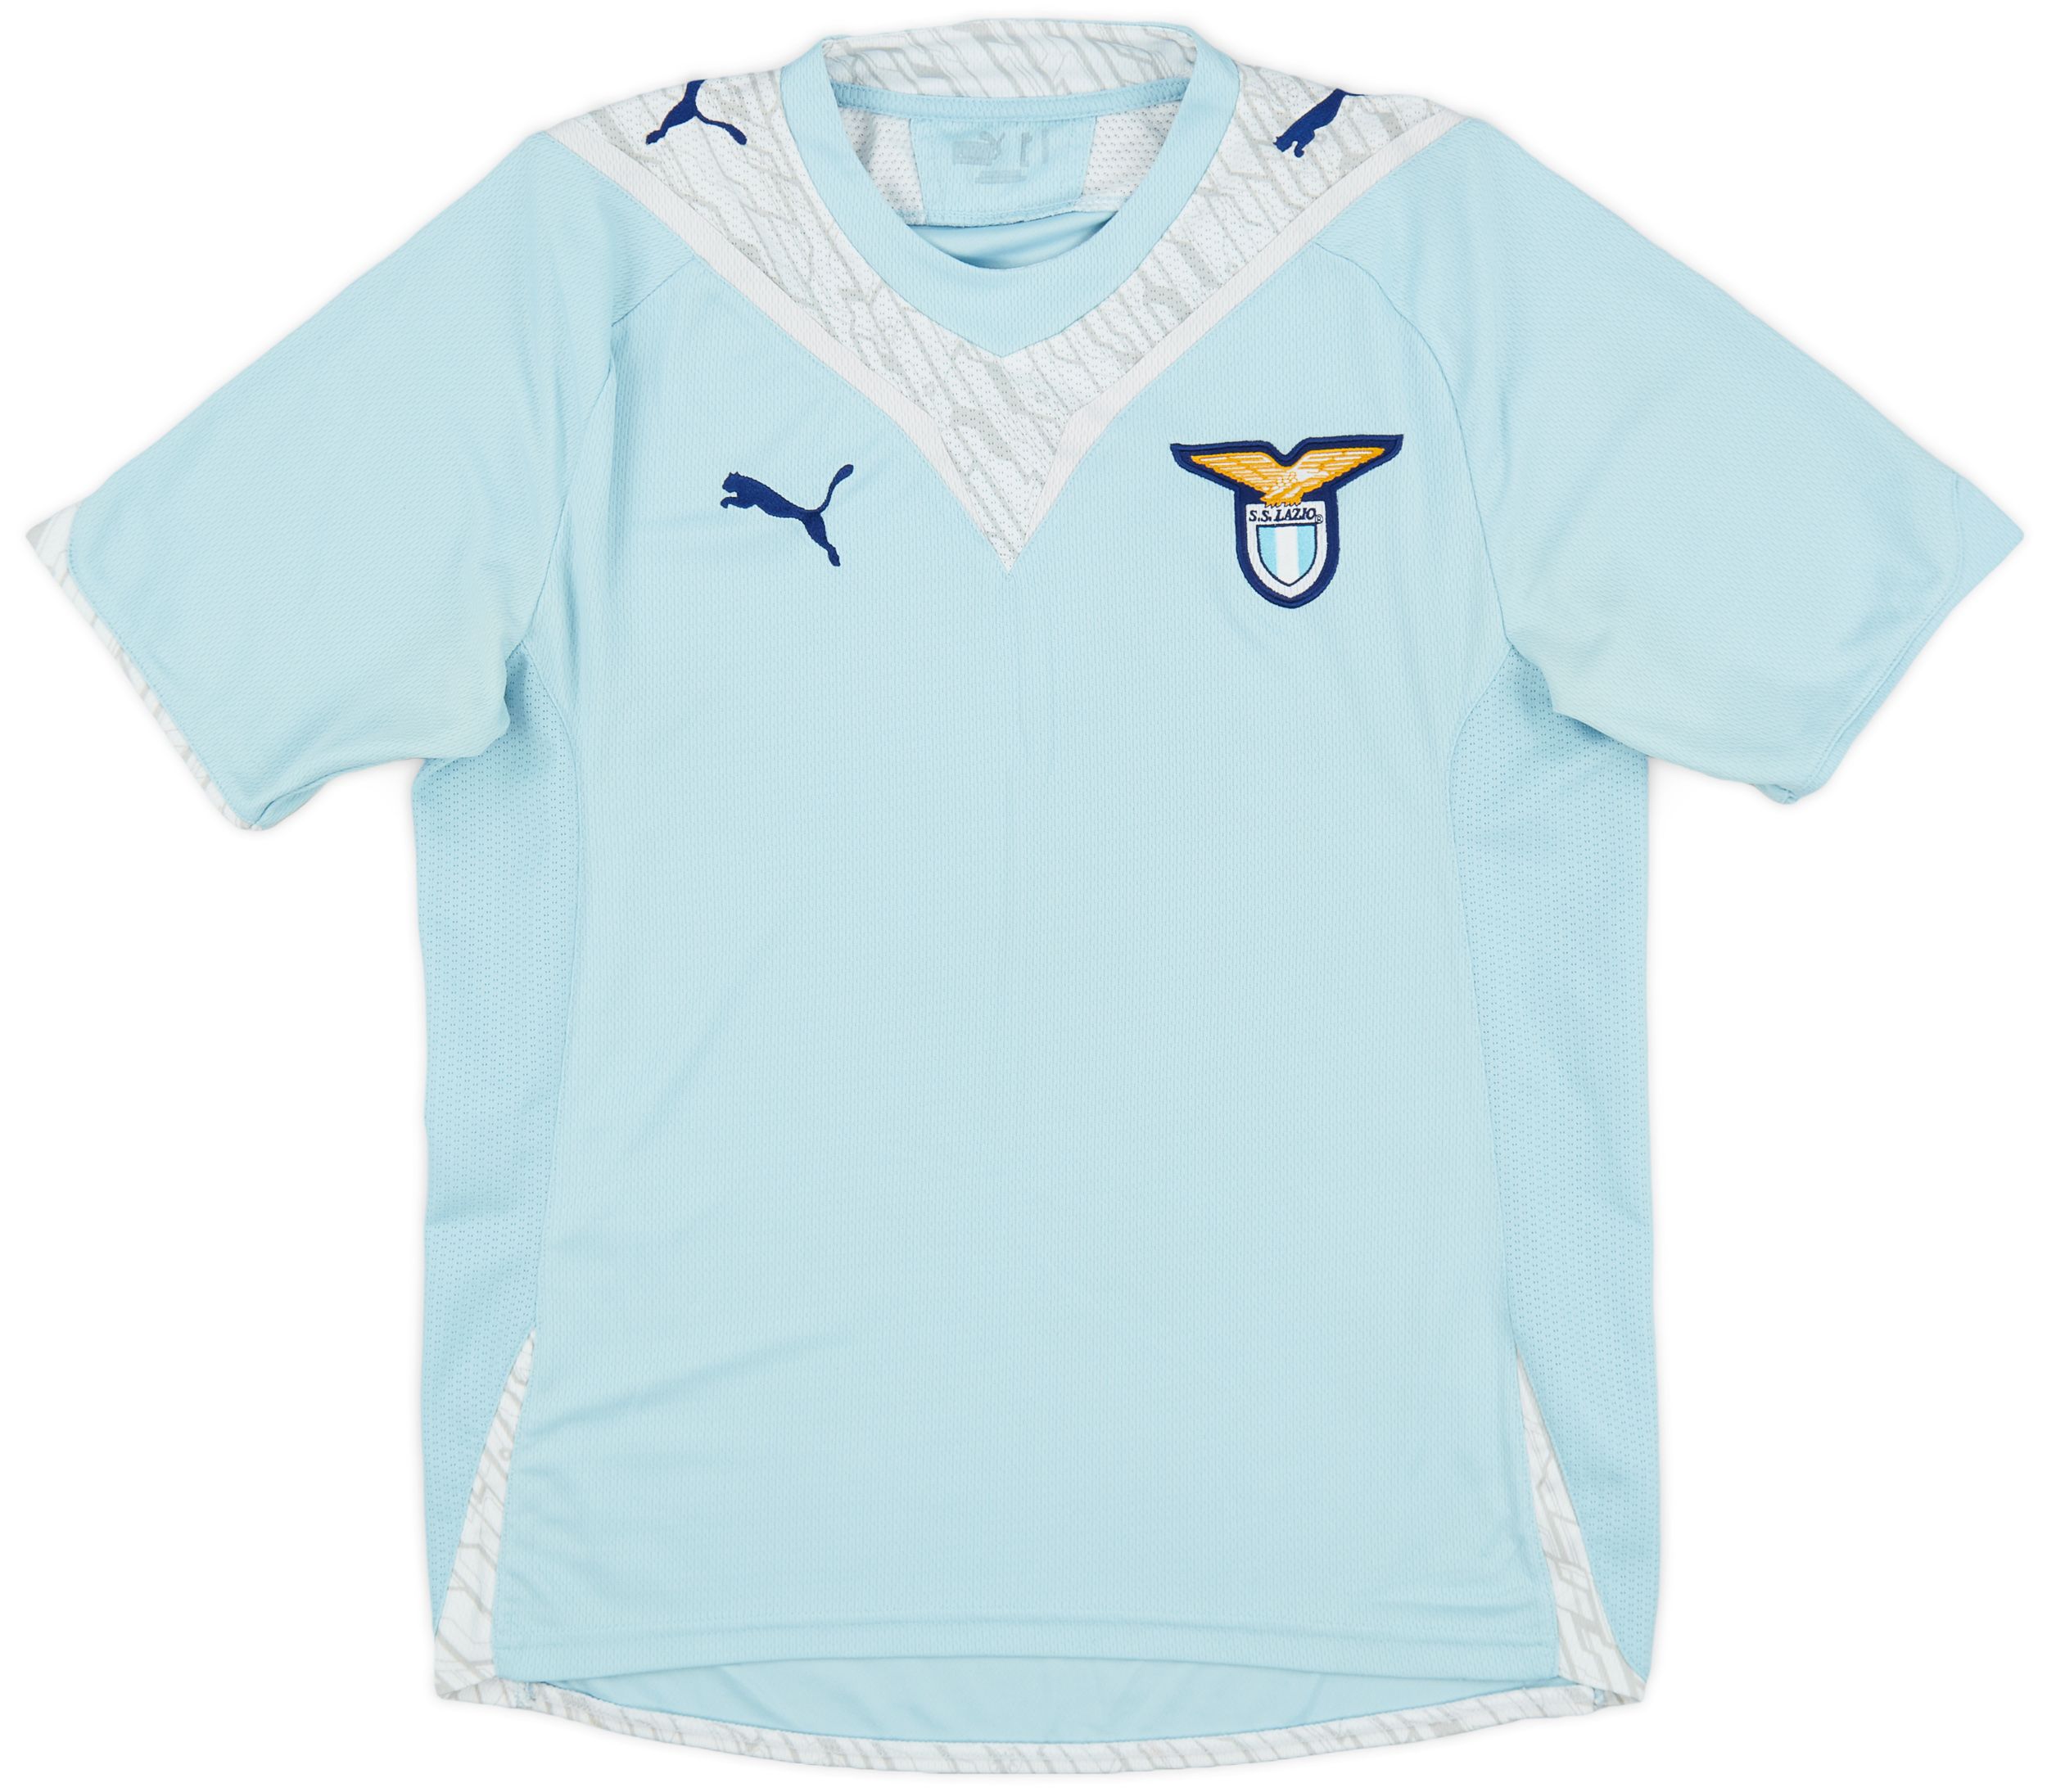 2009-10 Lazio Home Shirt - 9/10 - ()